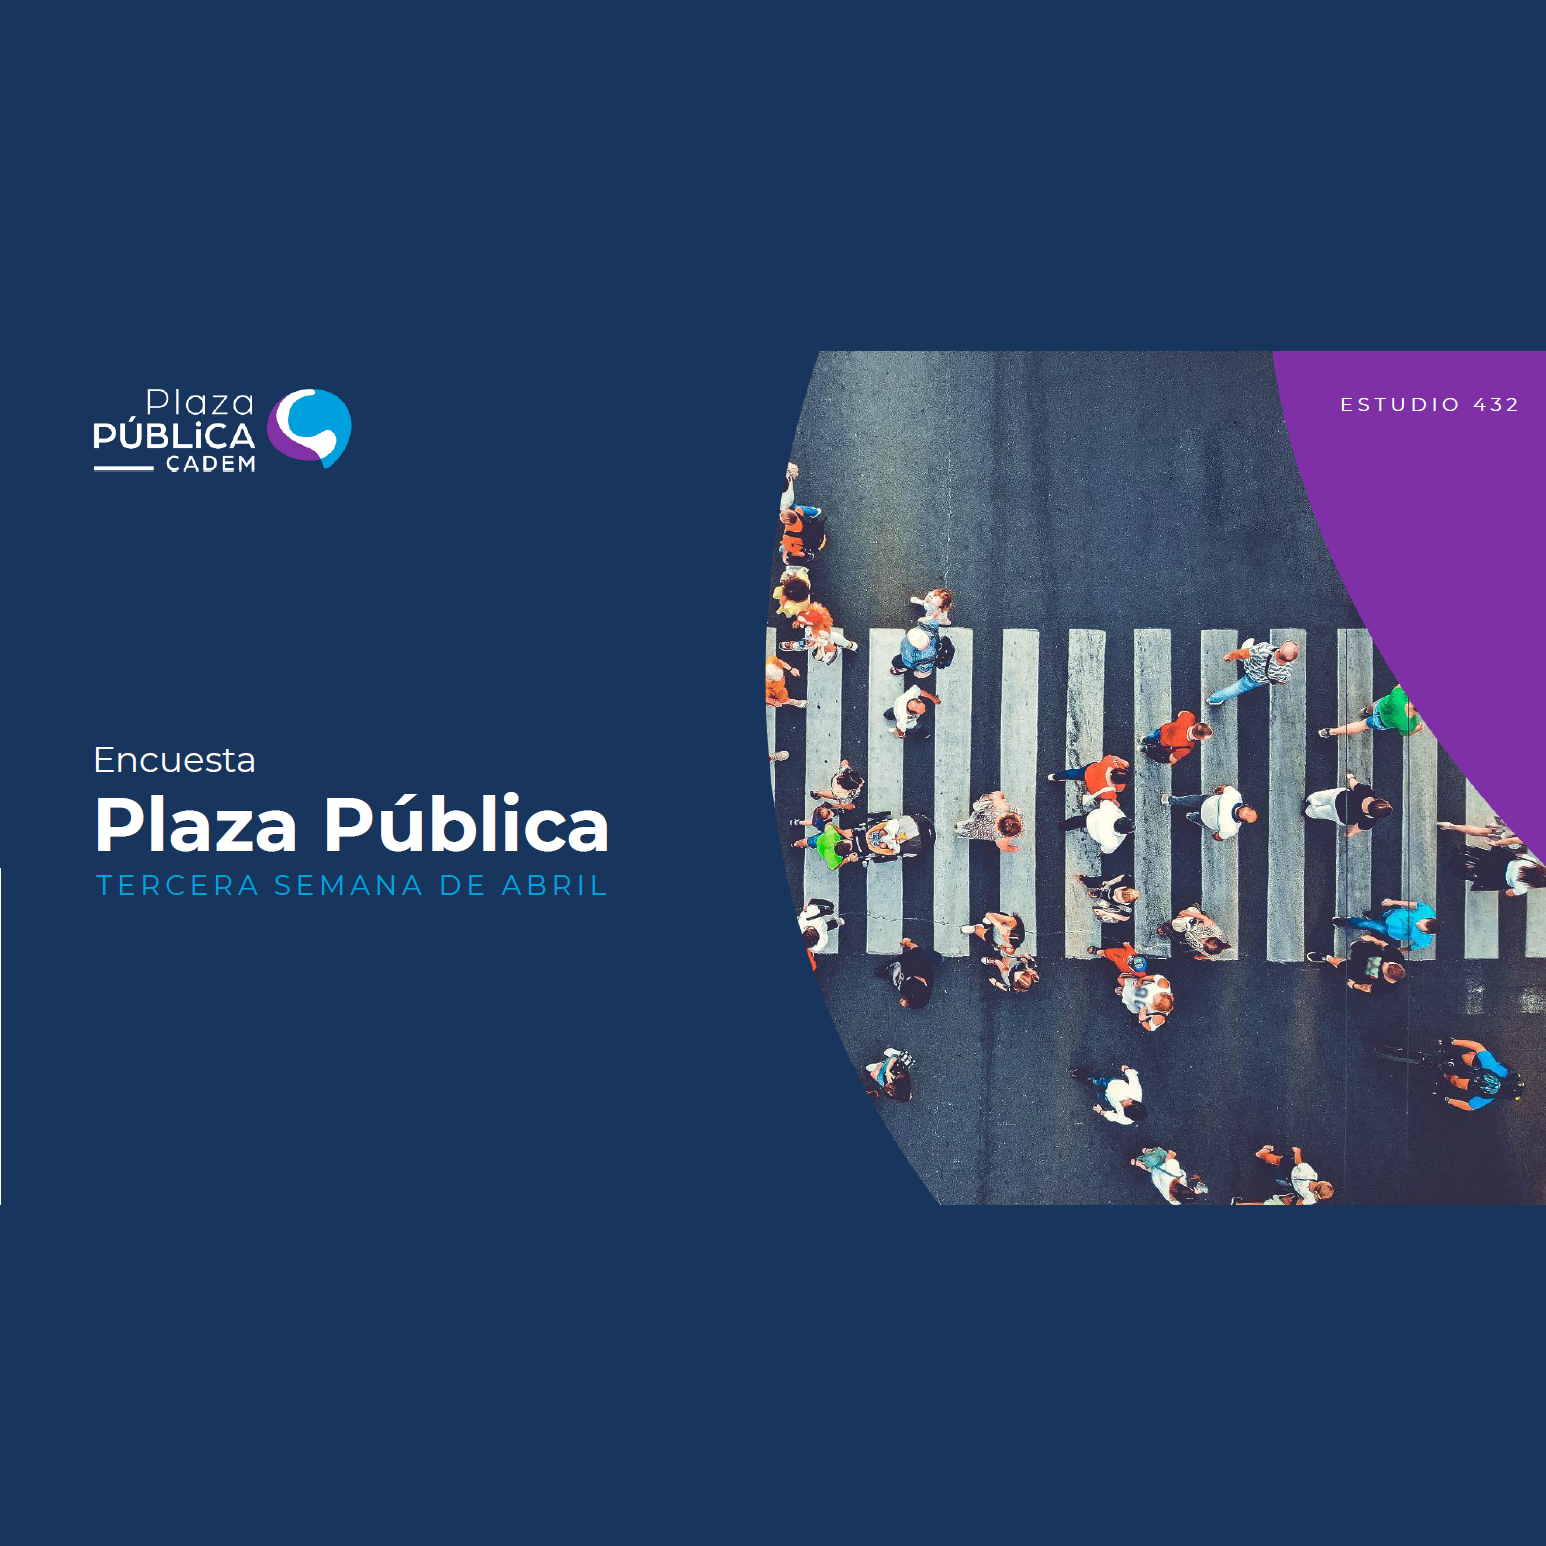 Plaza pública Cadem – tercera semana de abril